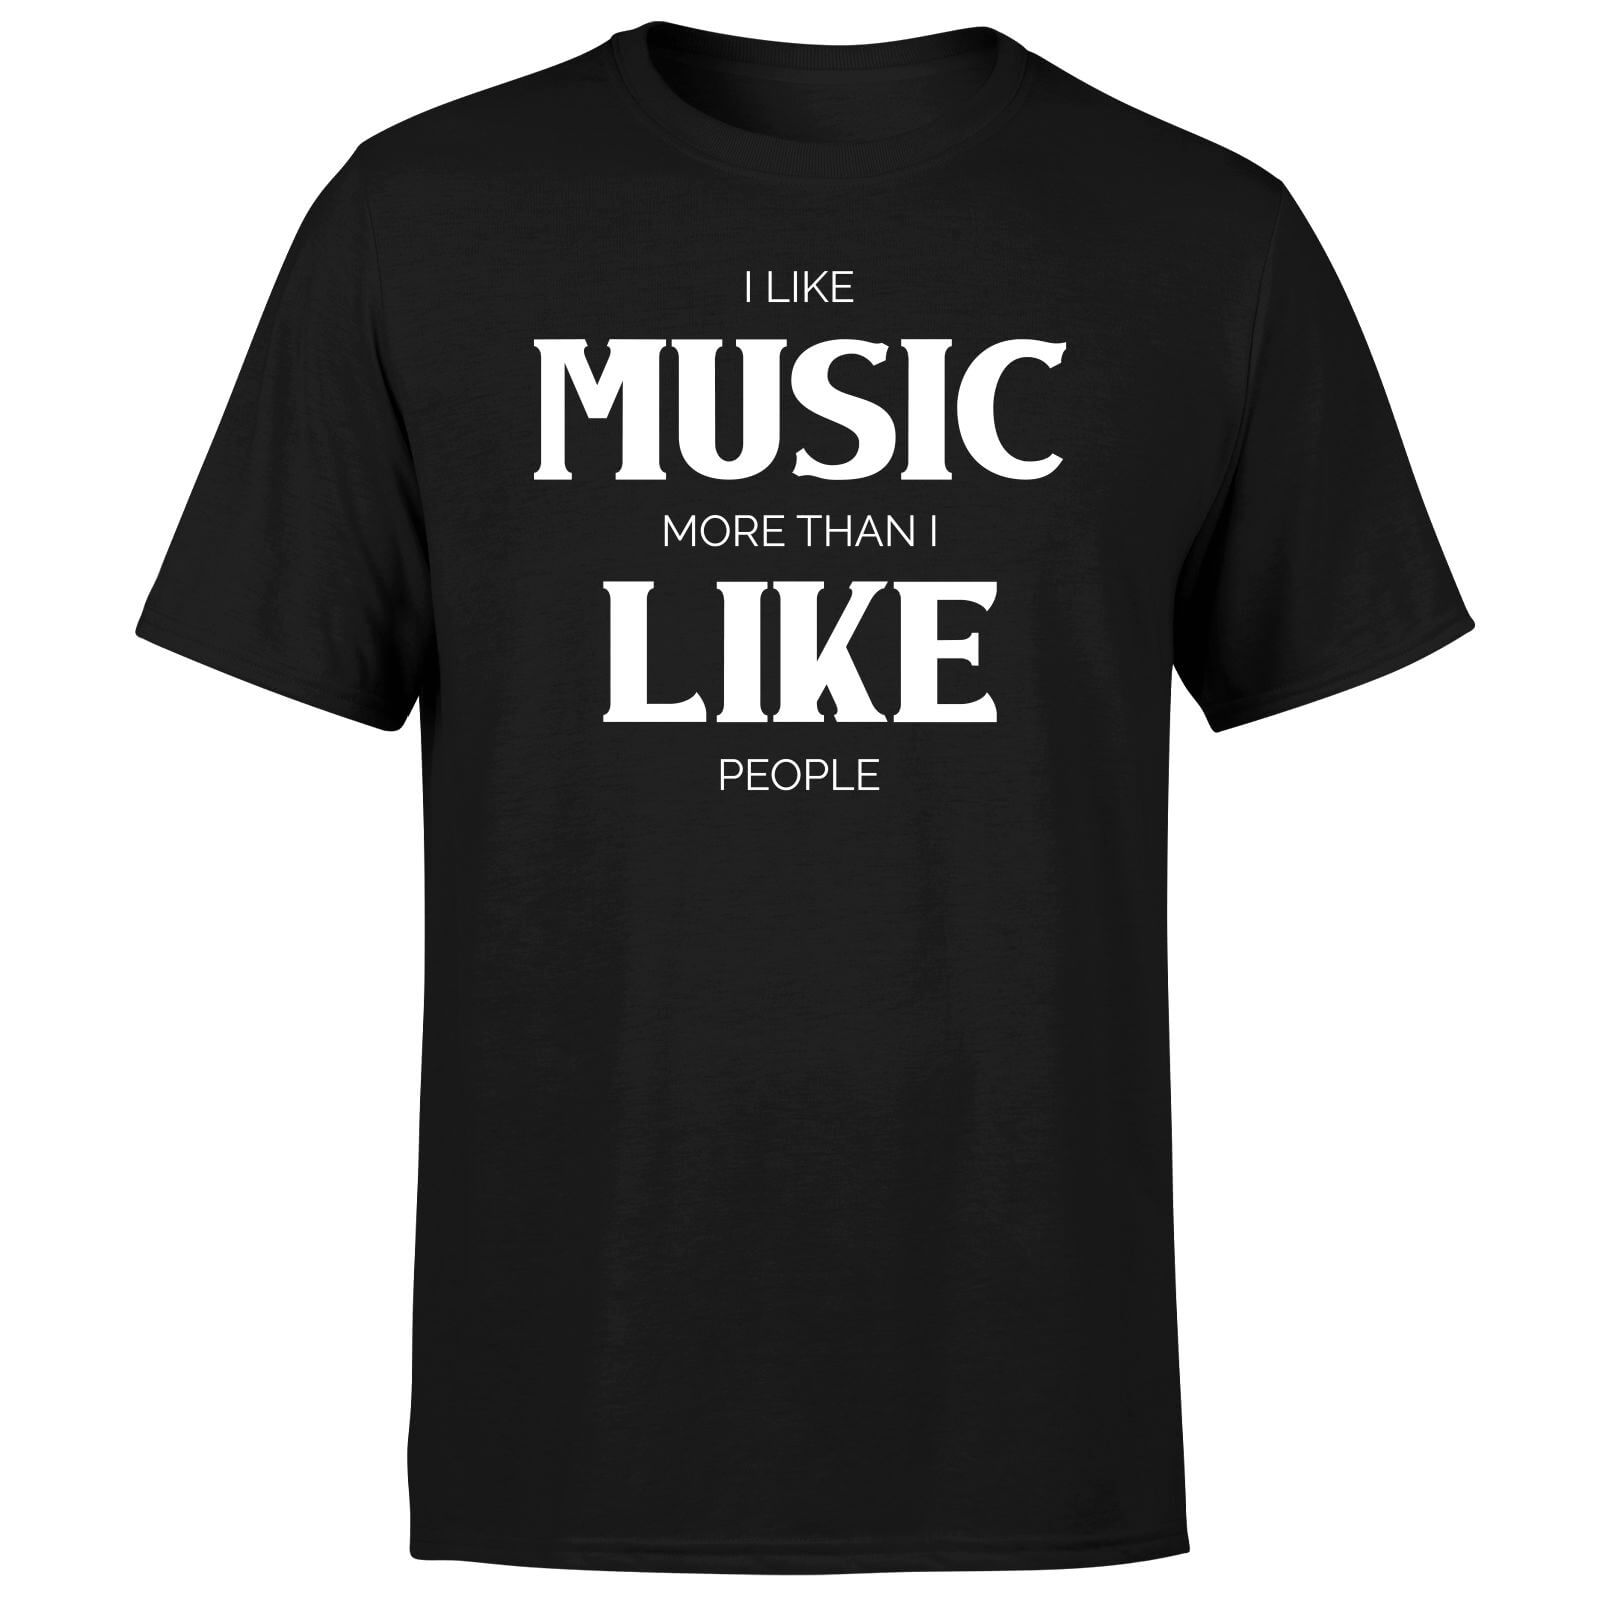 I Like Music More Than I Like People Men's T-Shirt - Black - XS - Black